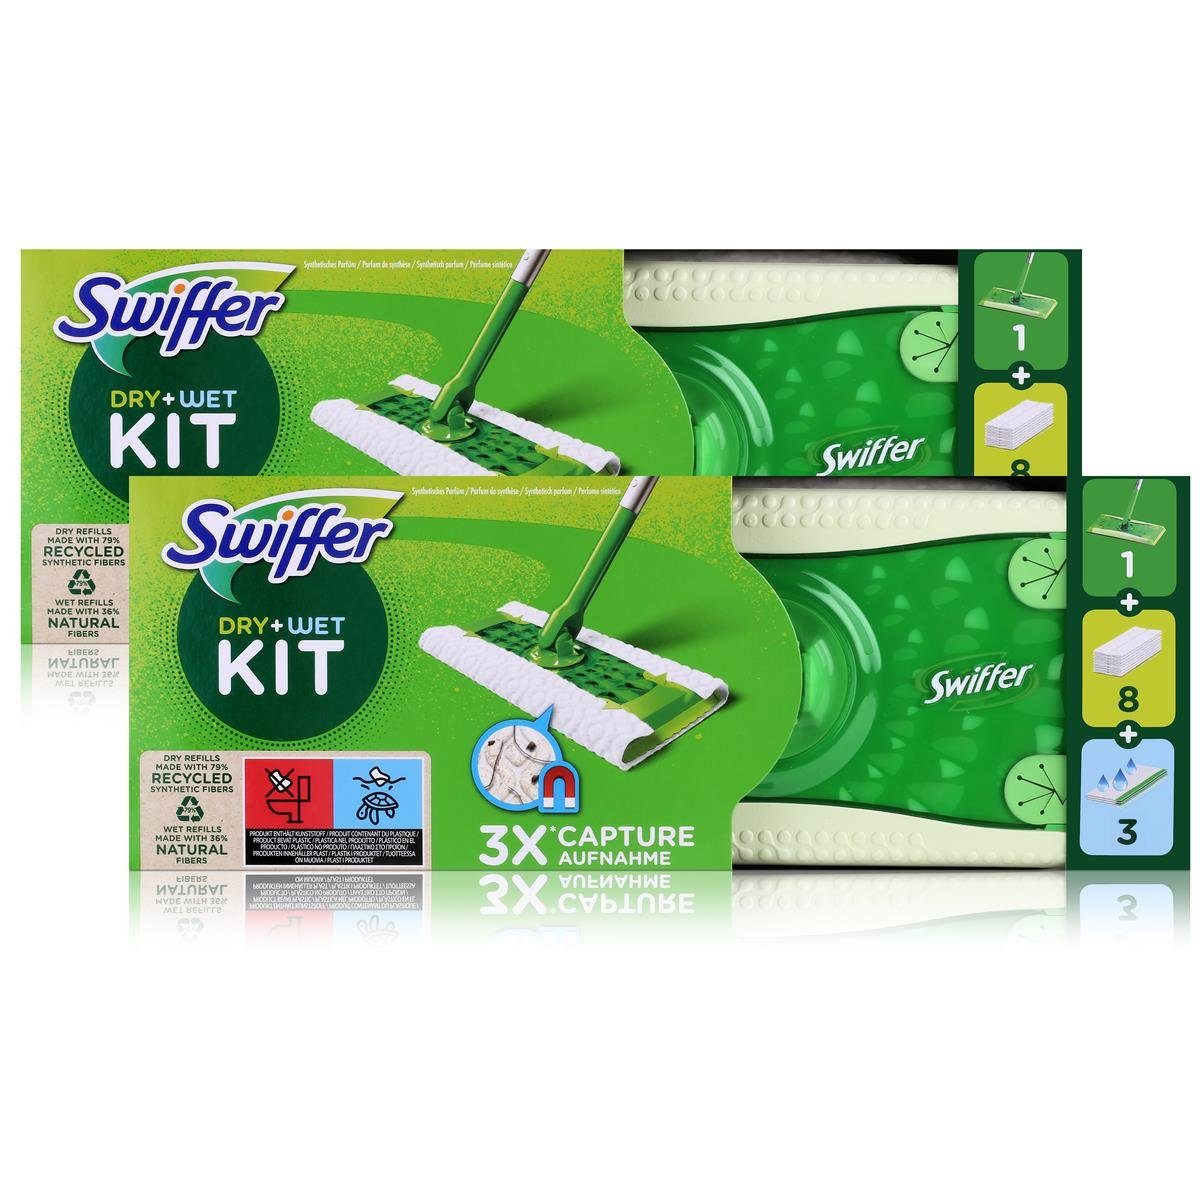 Swiffer Bodenwischer Pack Bodentücher (2er Staubmagnet Swiffer Dry+Wet Kit Fussbodenreiniger und